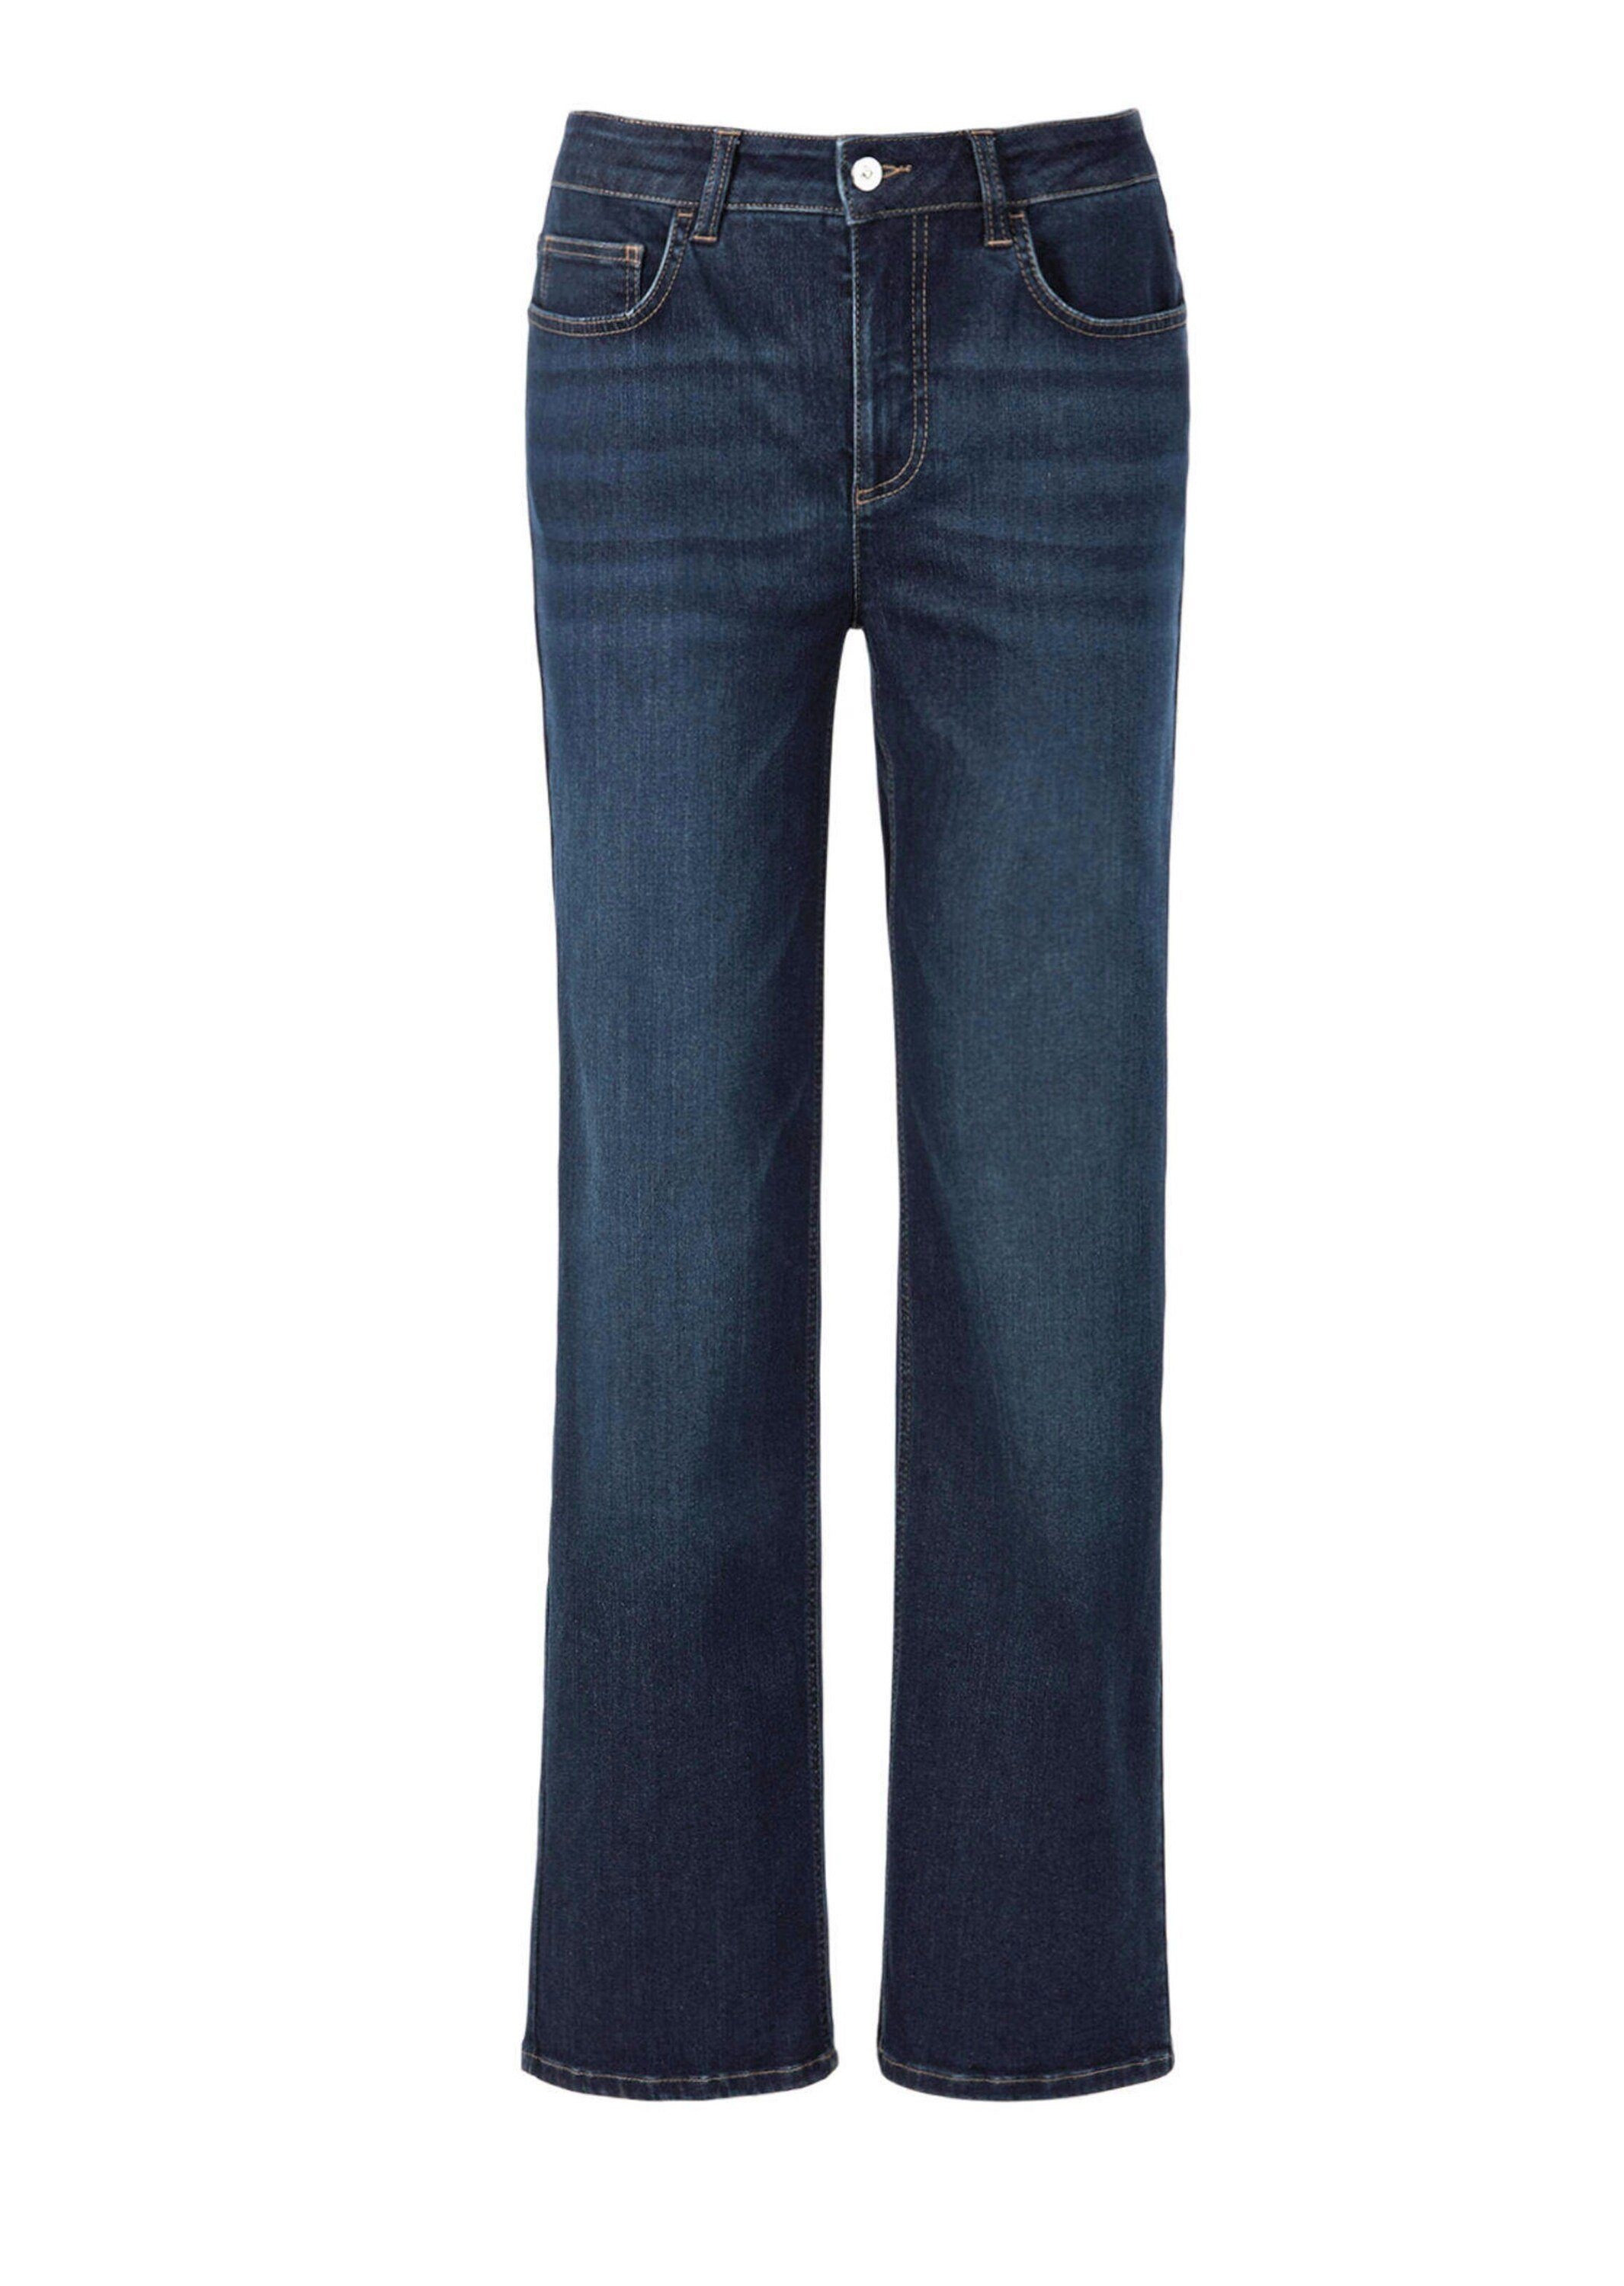 Jeans Bequeme Kurzgröße: Denim GOLDNER mit weitem Jeans Bein